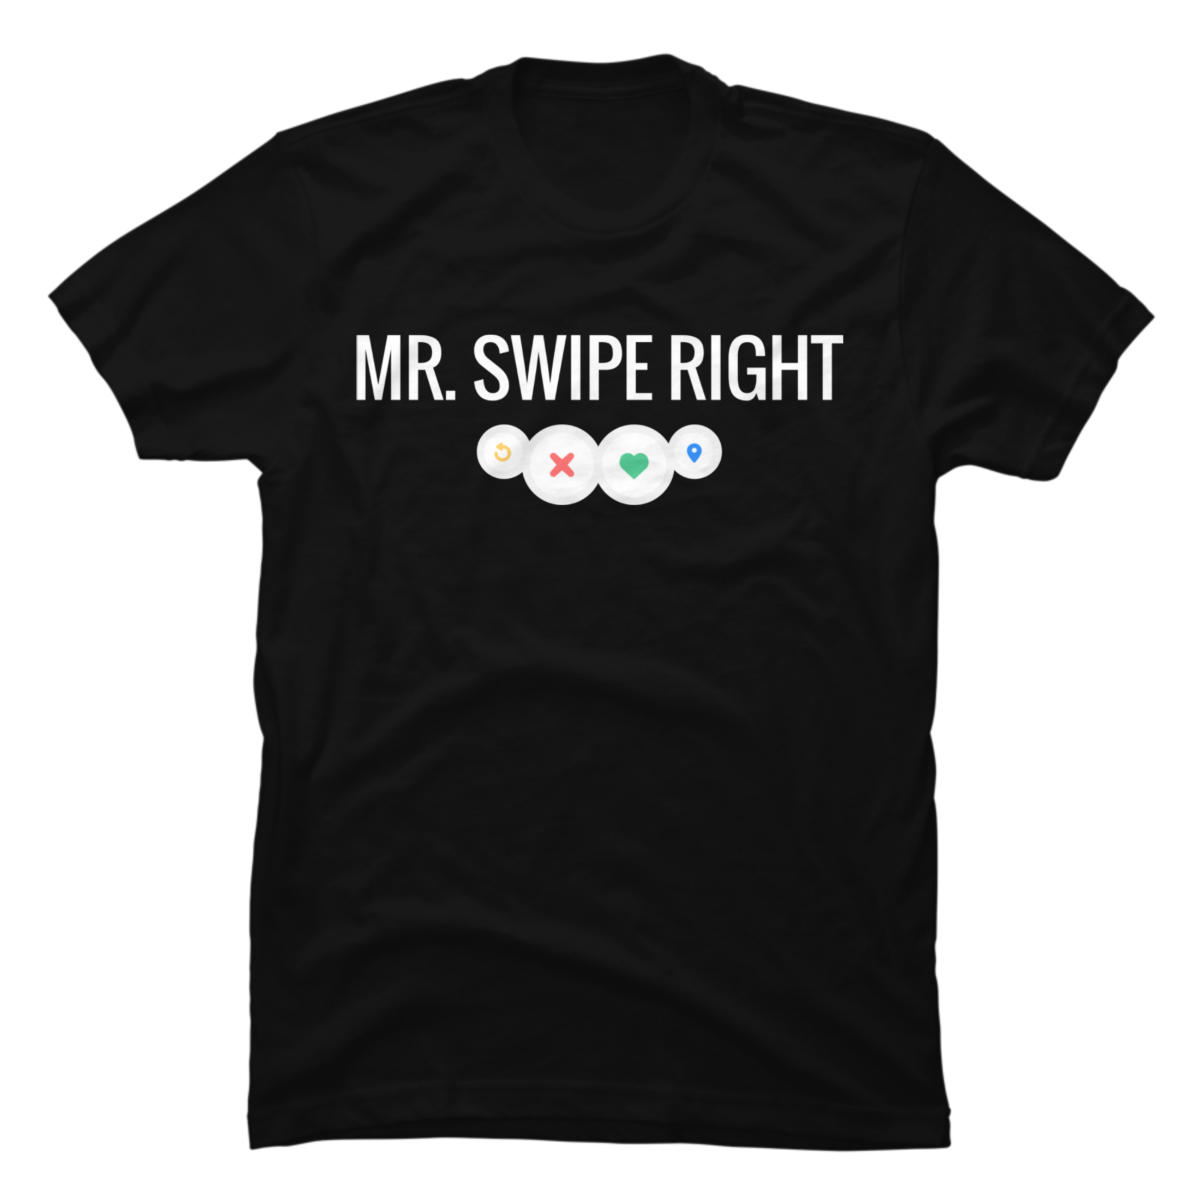 swipe right t shirt